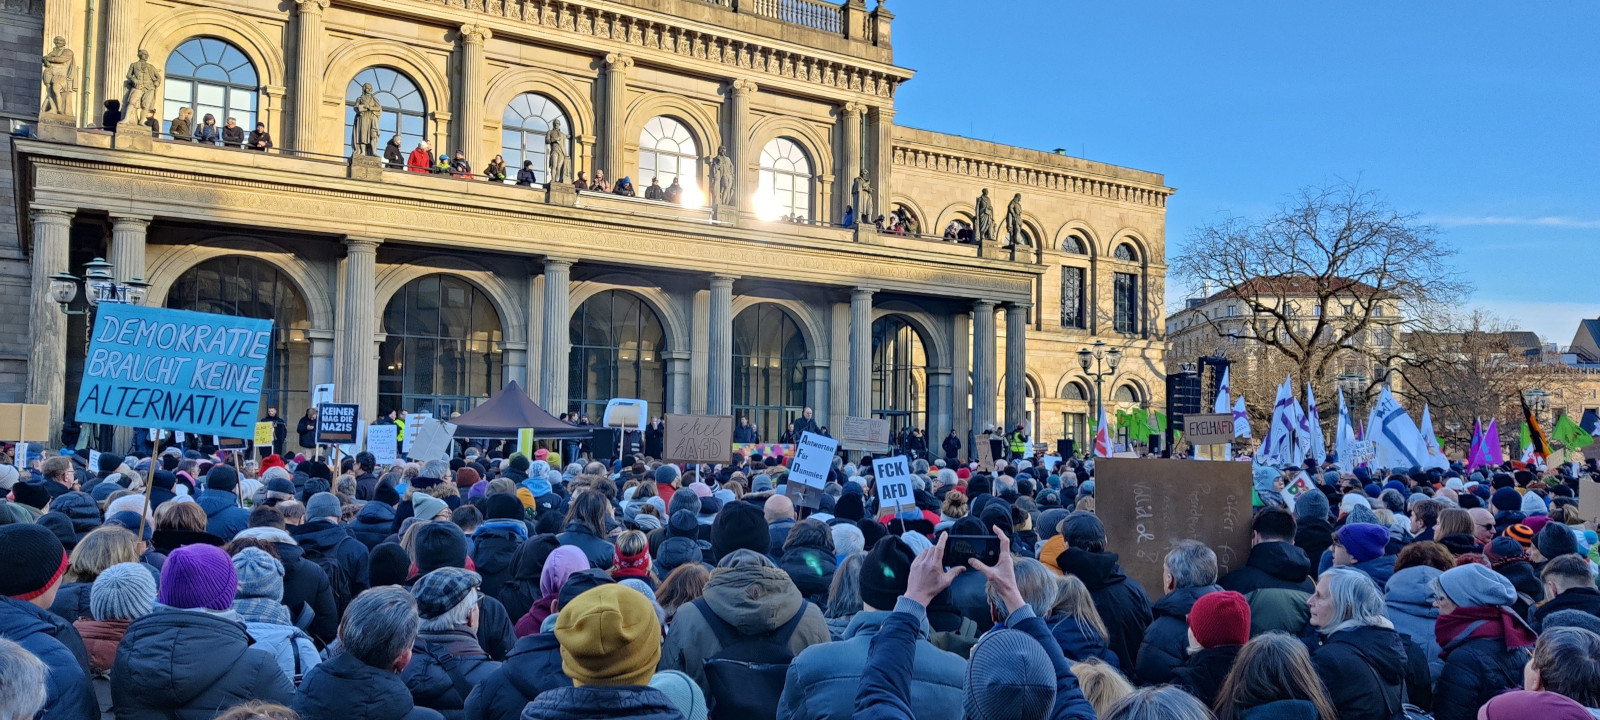 Bild einer Demo in Hannover gegen Feinde der Demokratie.